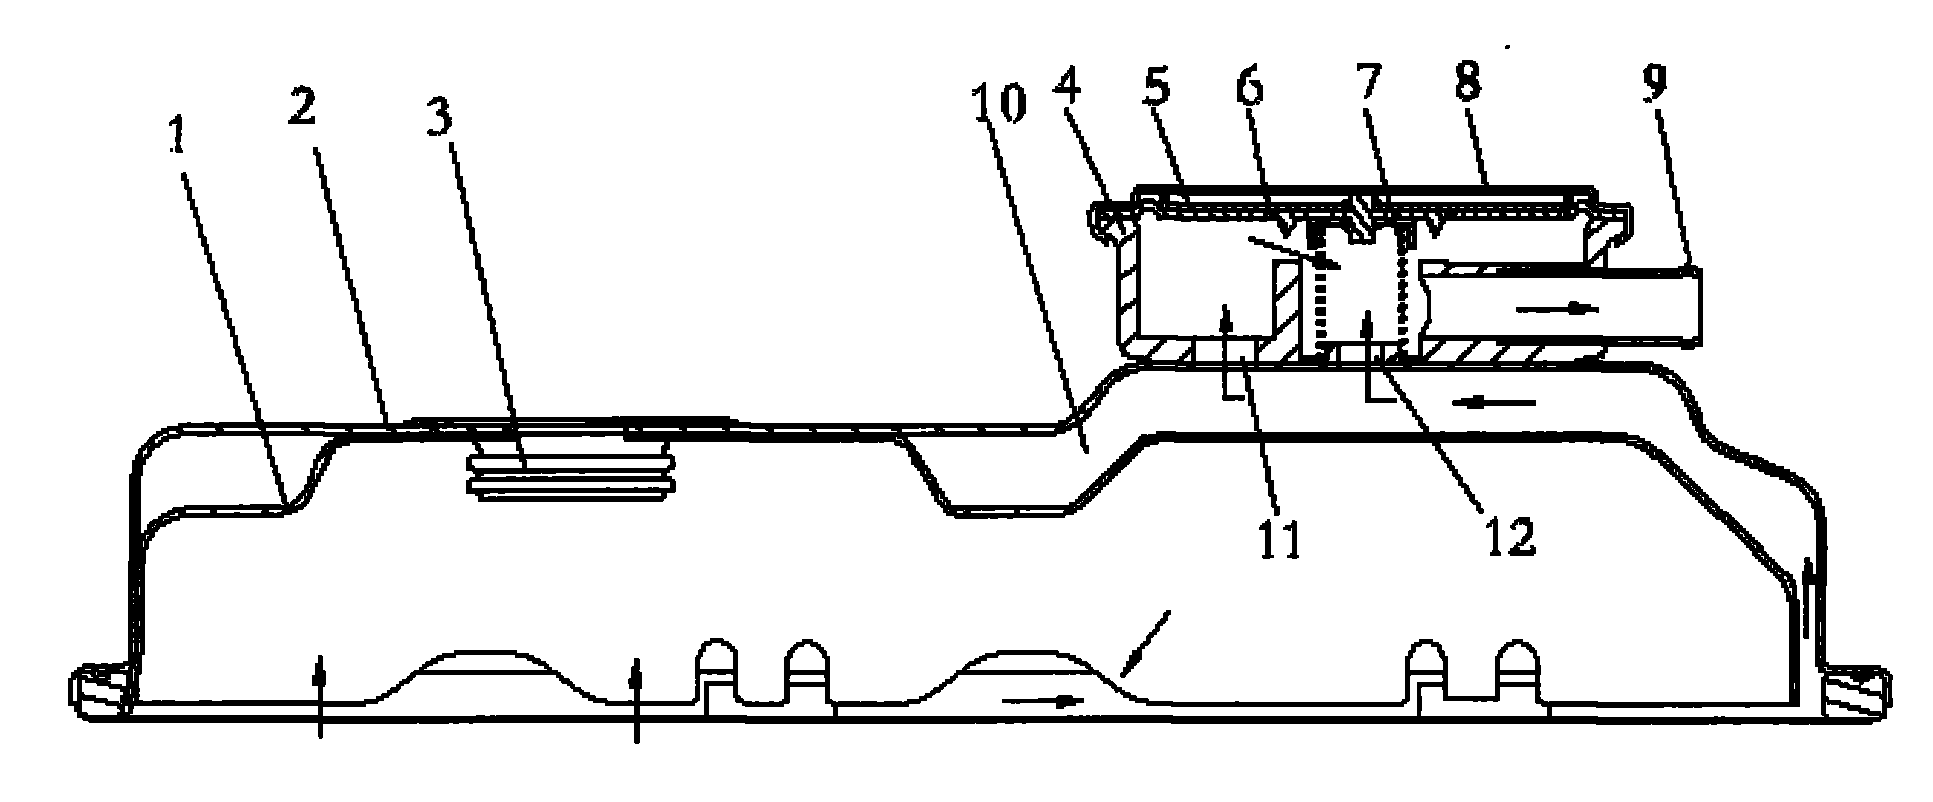 Pressure control valve type engine crankcase ventilator